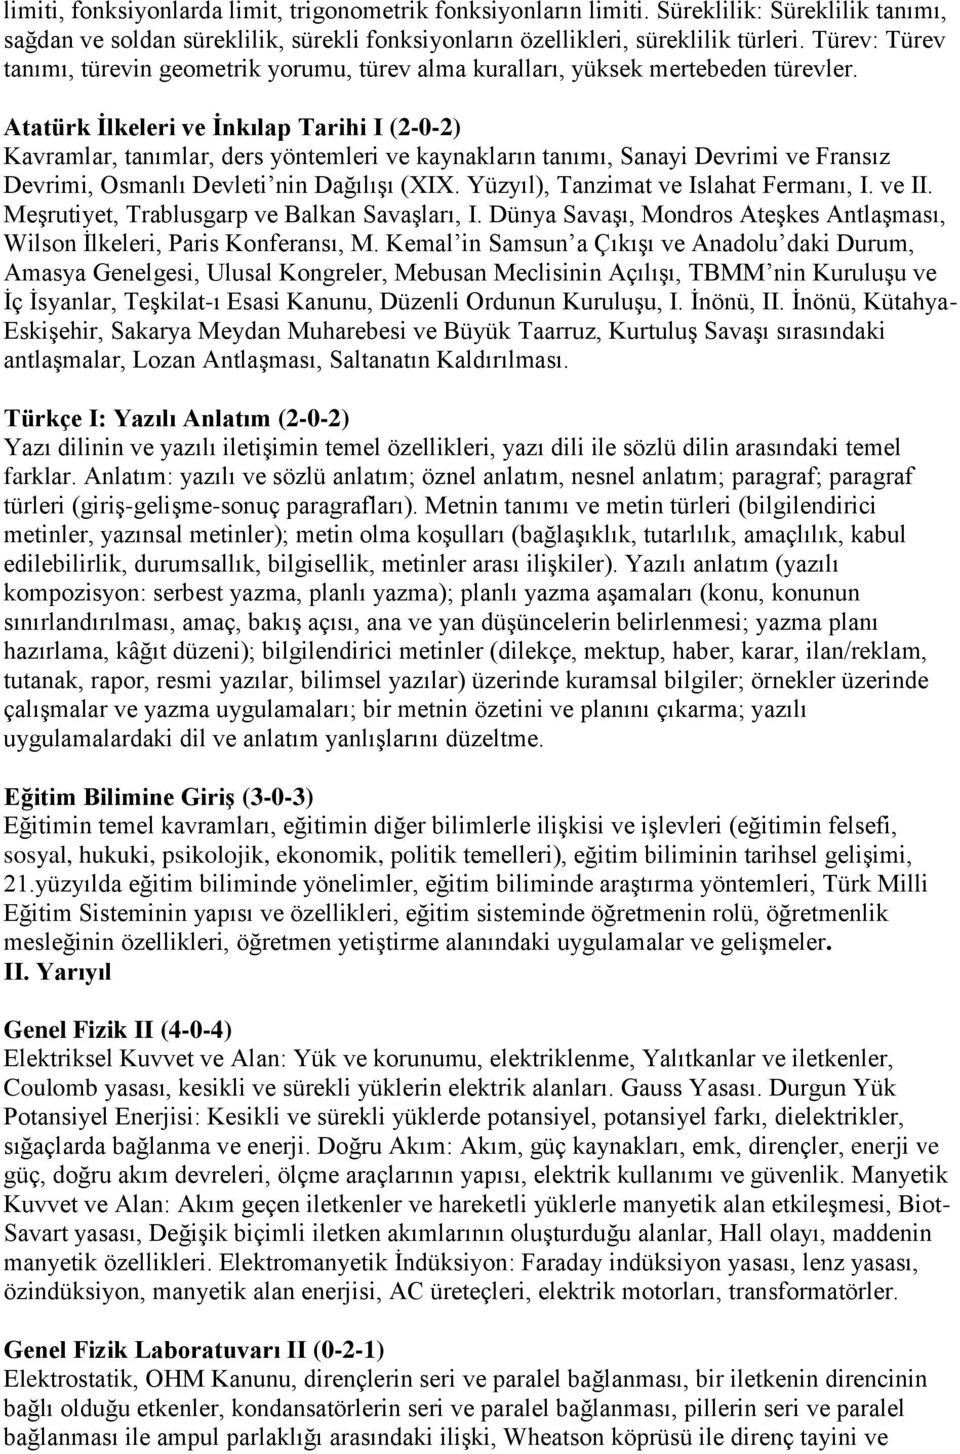 Atatürk Ġlkeleri ve Ġnkılap Tarihi I (2-0-2) Kavramlar, tanımlar, ders yöntemleri ve kaynakların tanımı, Sanayi Devrimi ve Fransız Devrimi, Osmanlı Devleti nin Dağılışı (XIX.